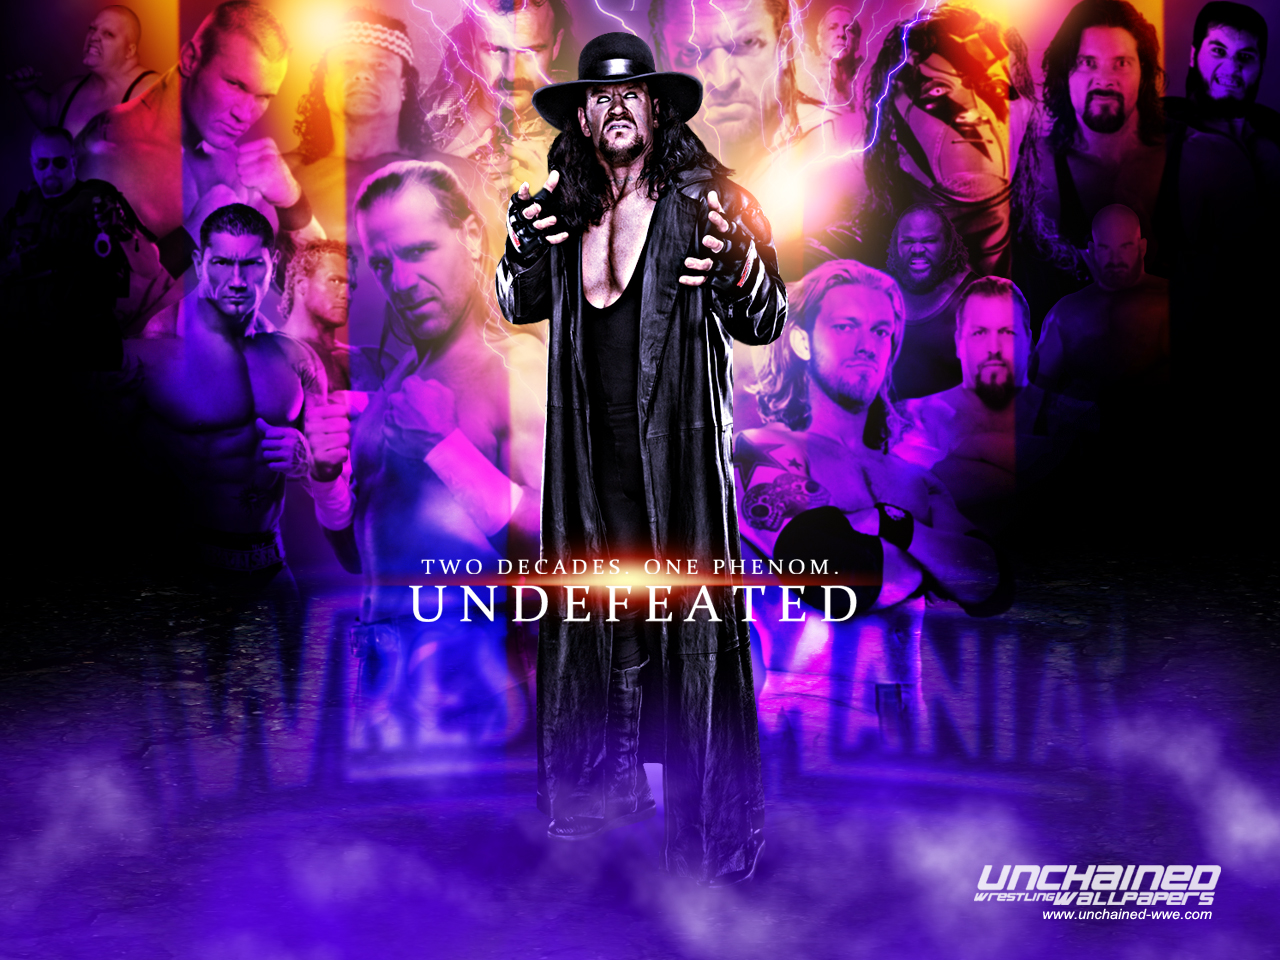 Undertaker-Undefeated - WWE Wallpaper (30107884) - Fanpop